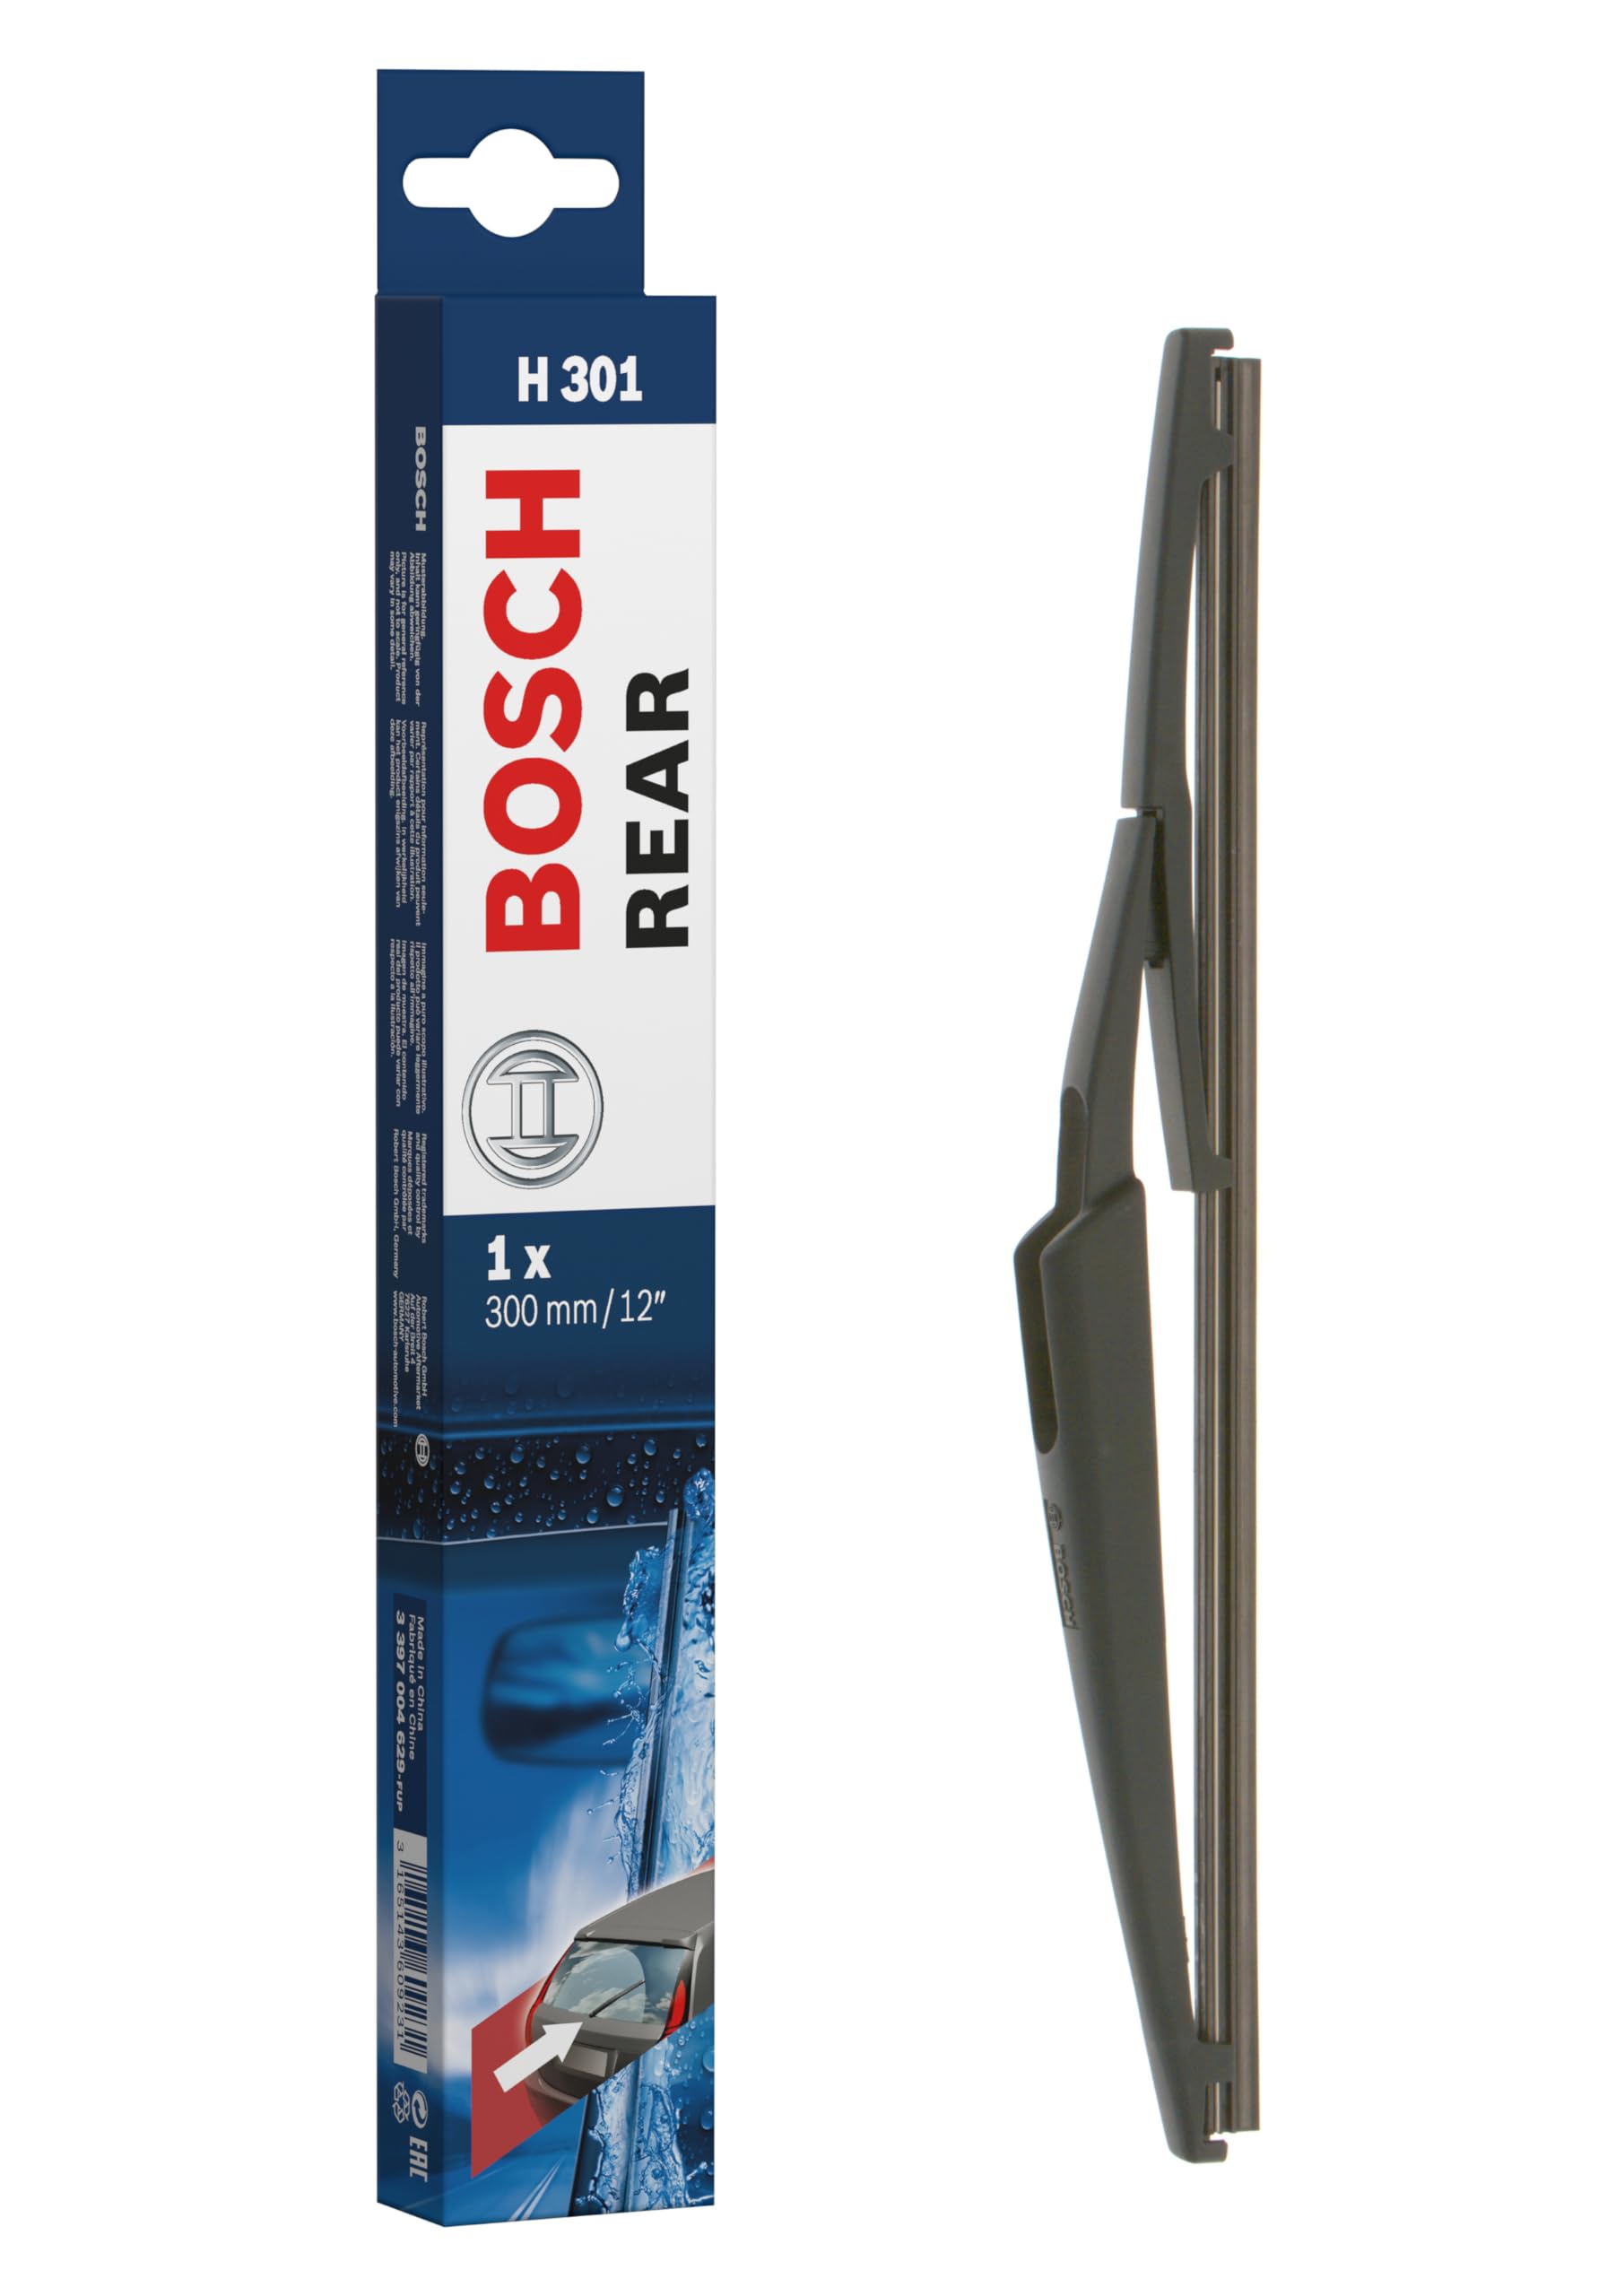 Bosch Scheibenwischer Rear H301, Länge: 300mm – Scheibenwischer für Heckscheibe von Bosch Automotive